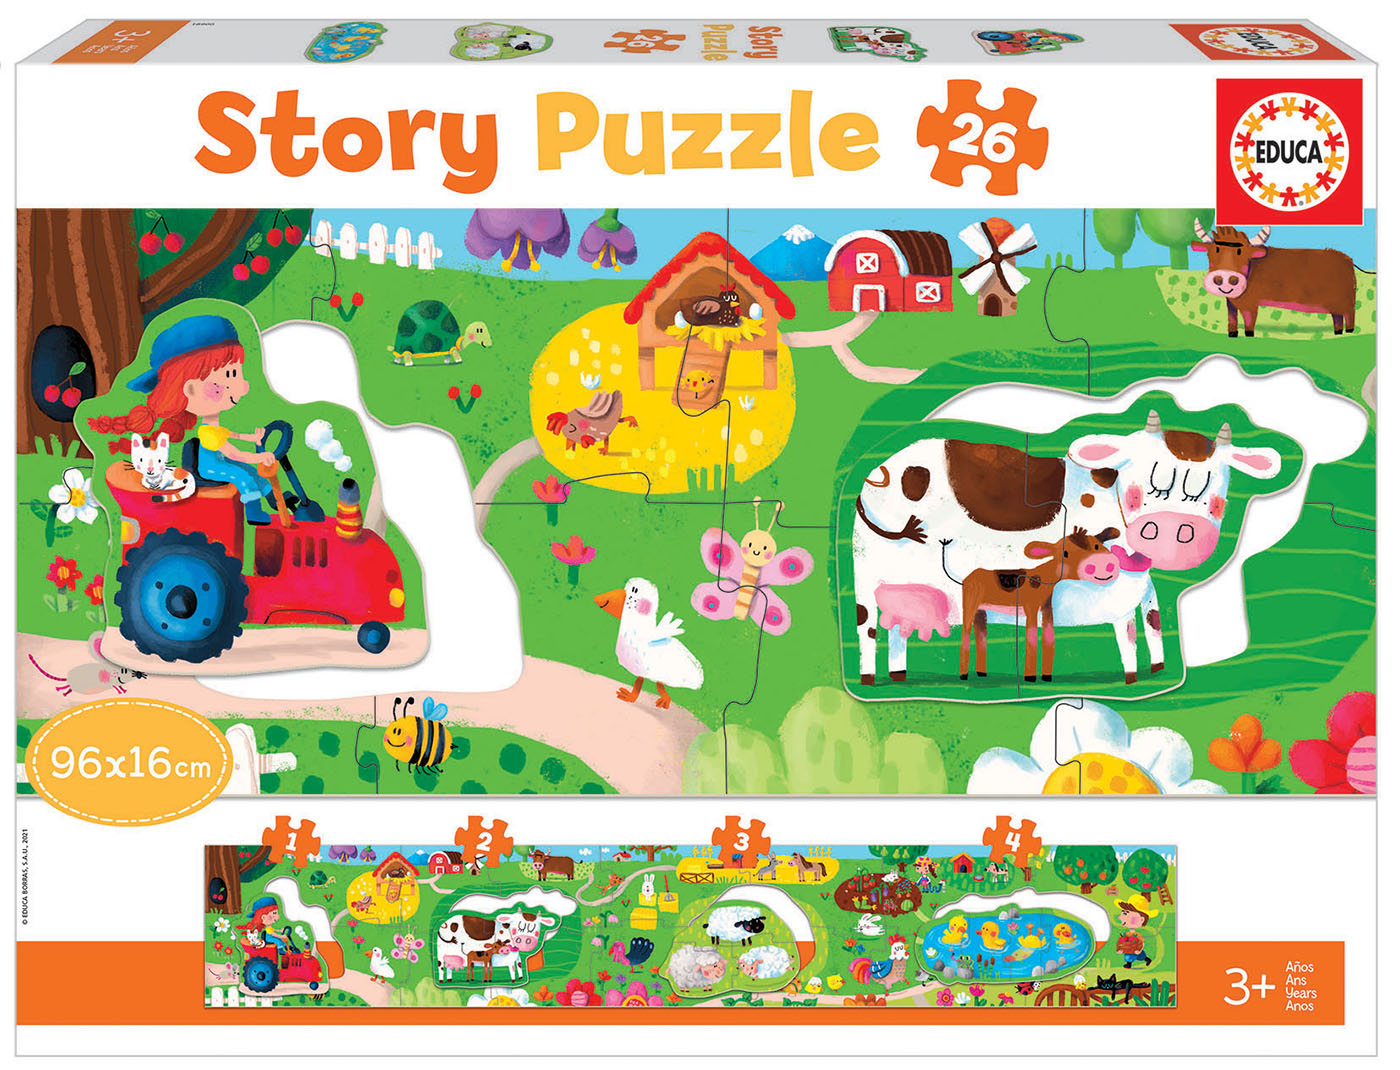 Educa Borras - Puzzle infantil Sonic Prime Neon de 300 peças ㅤ, PUZZLE  300+ pçs